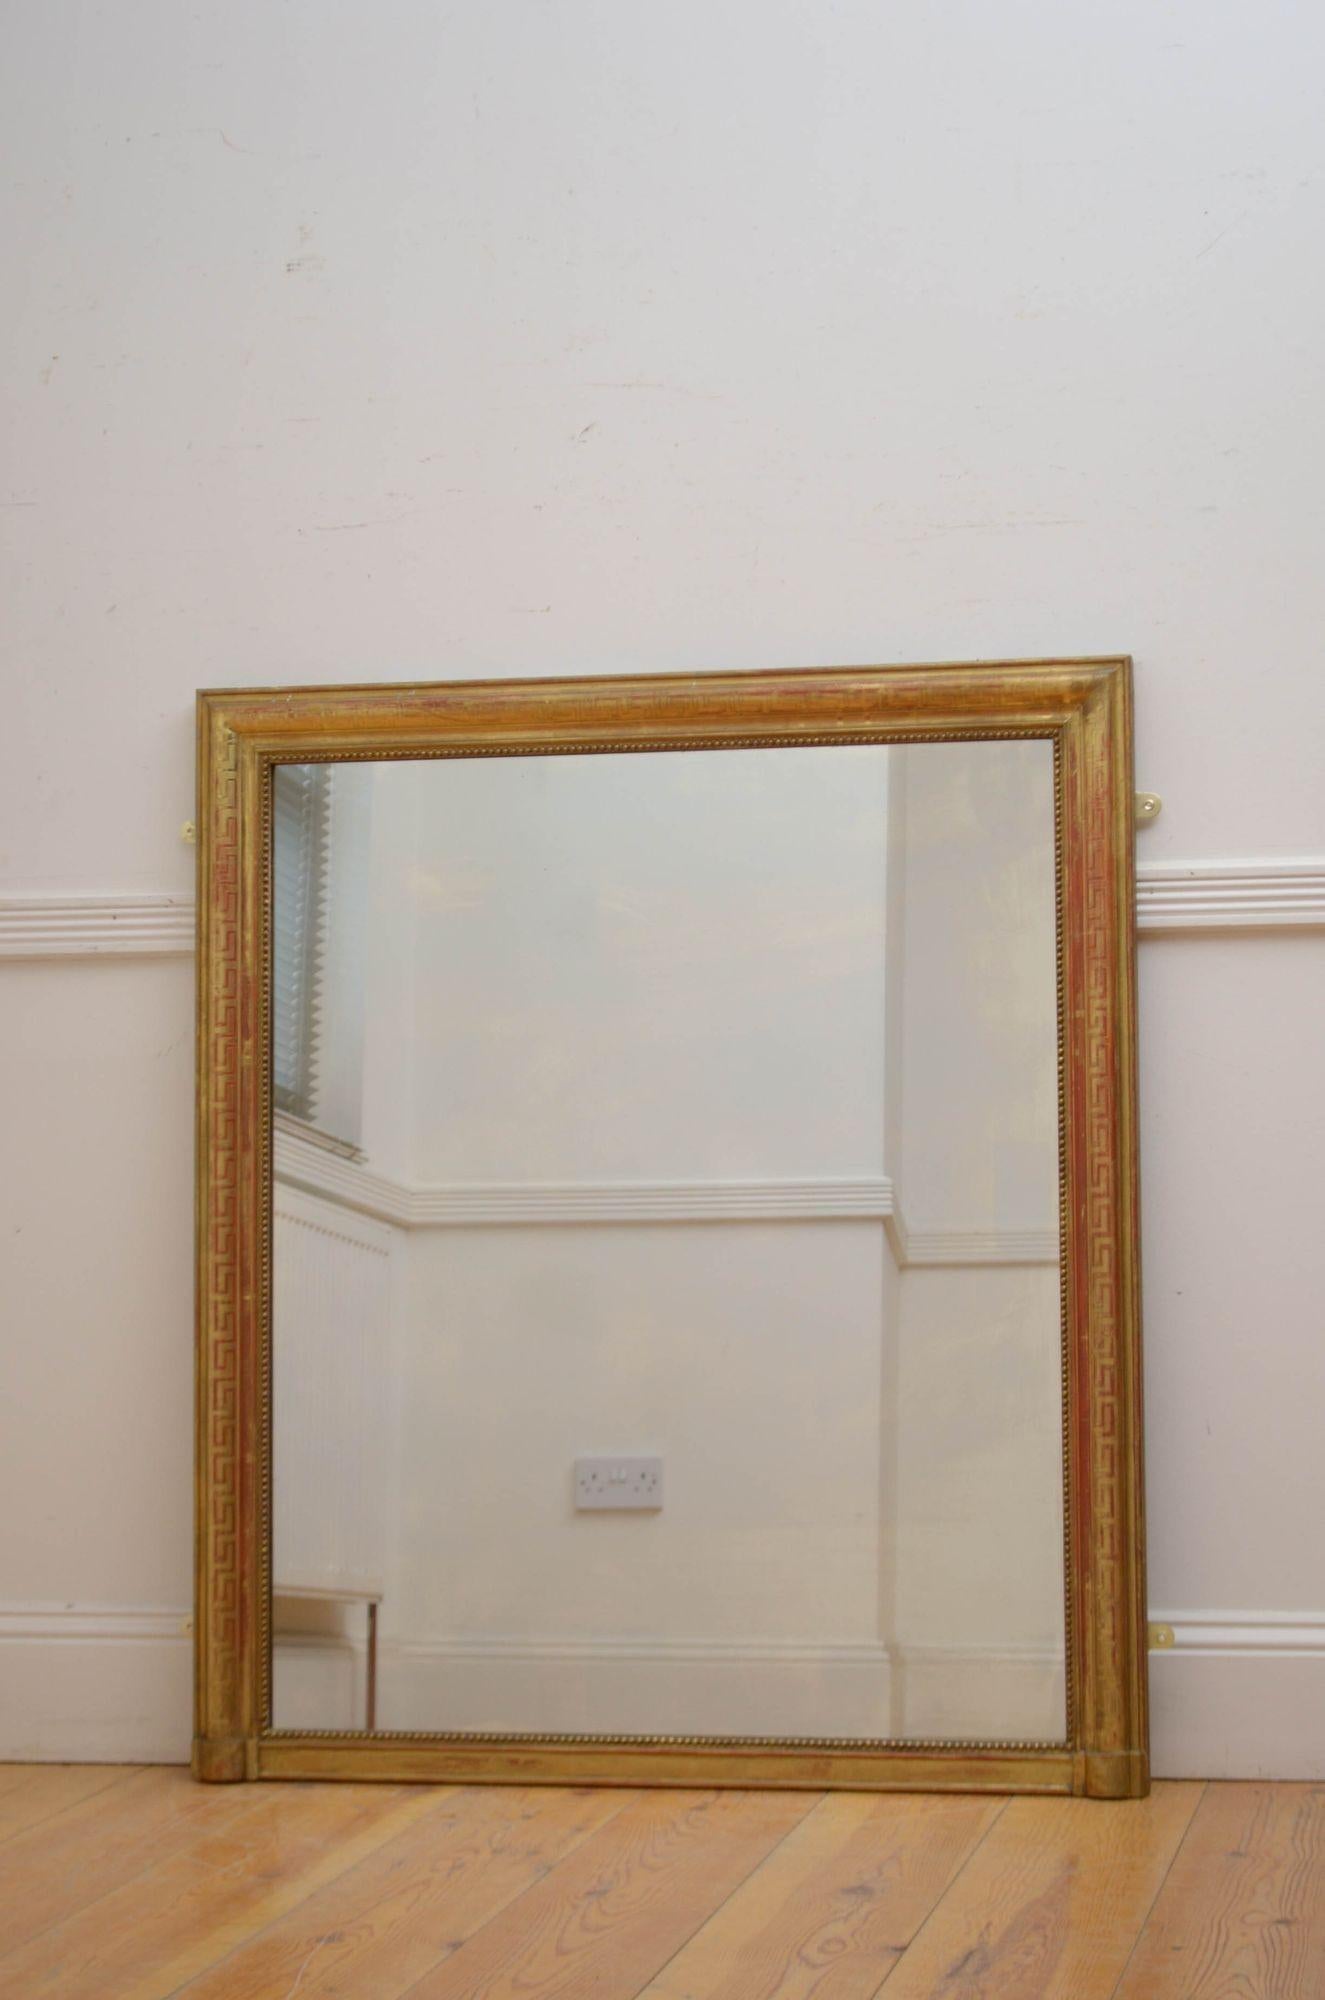 Sn5538 Elegant miroir mural en bois doré français du 19e siècle, avec verre d'origine présentant quelques imperfections, dans un cadre perlé, mouluré et doré avec décoration en forme de clé grecque sur l'ensemble. Ce miroir ancien a conservé son